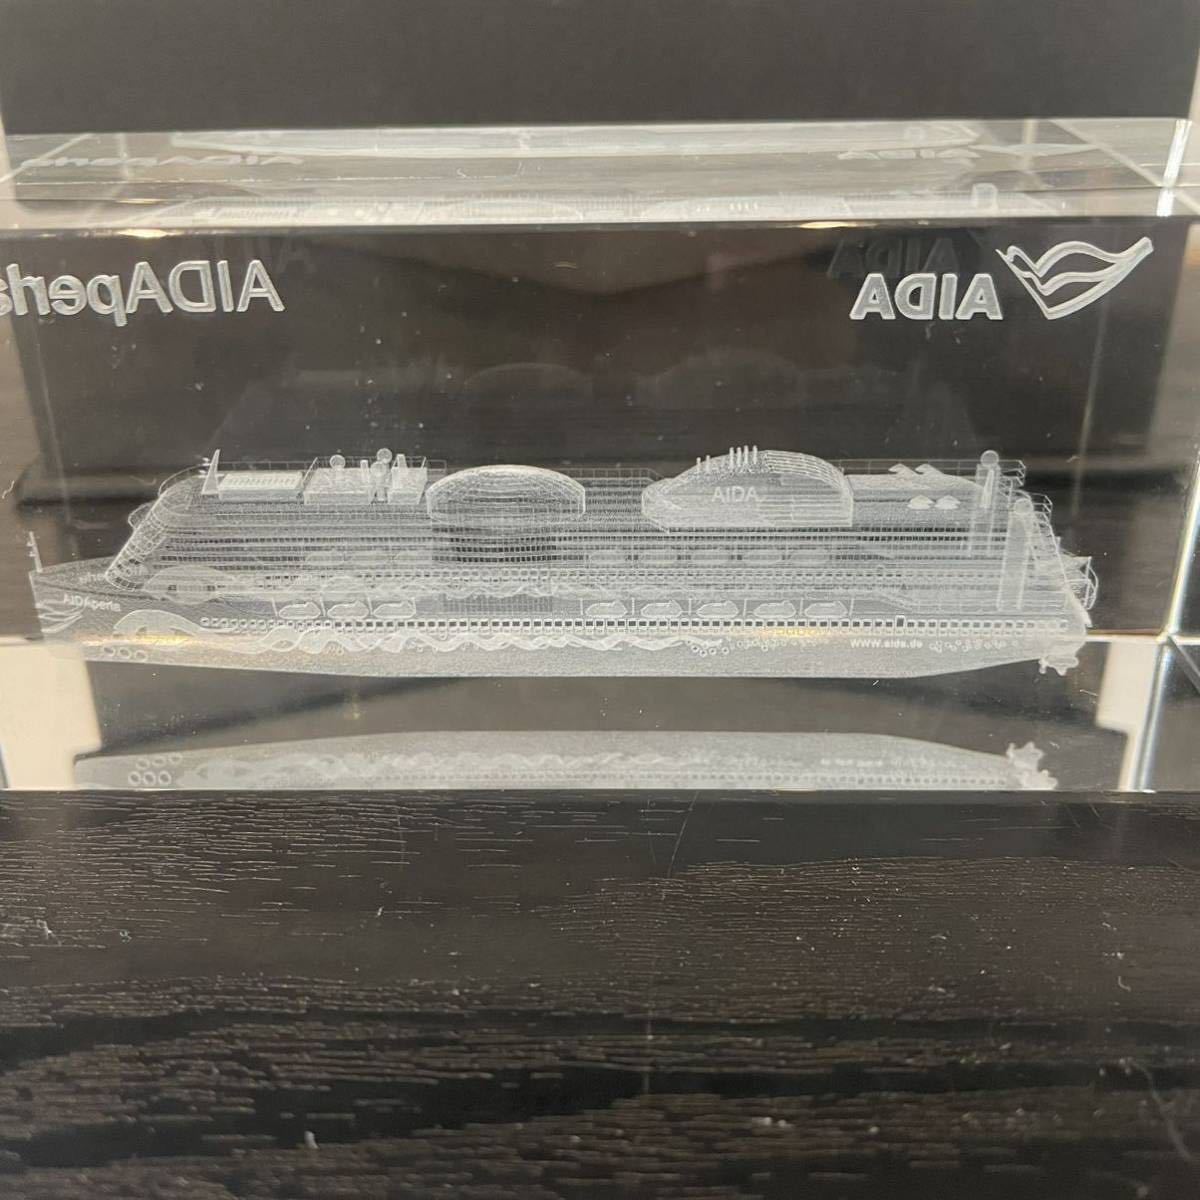  очень редкий I -daperula crystal искусство I -da* круиз Германия большой пассажирское судно круиз судно Mitsubishi структура судно Novelty редкость 